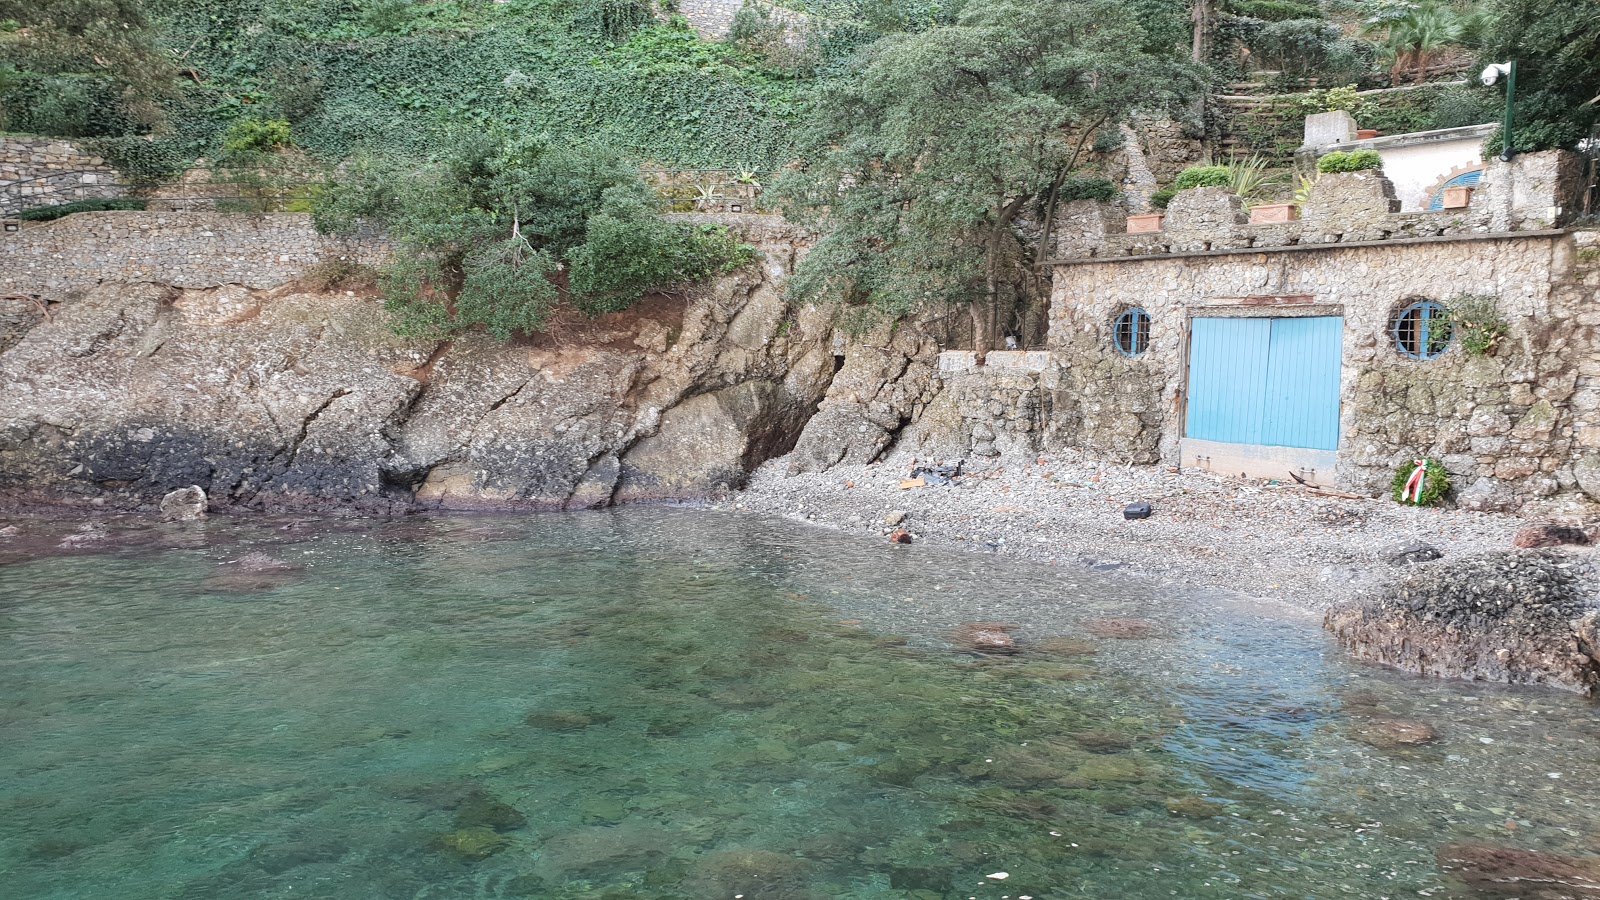 Foto av Spiaggia dell'Olivetta omgiven av klippor